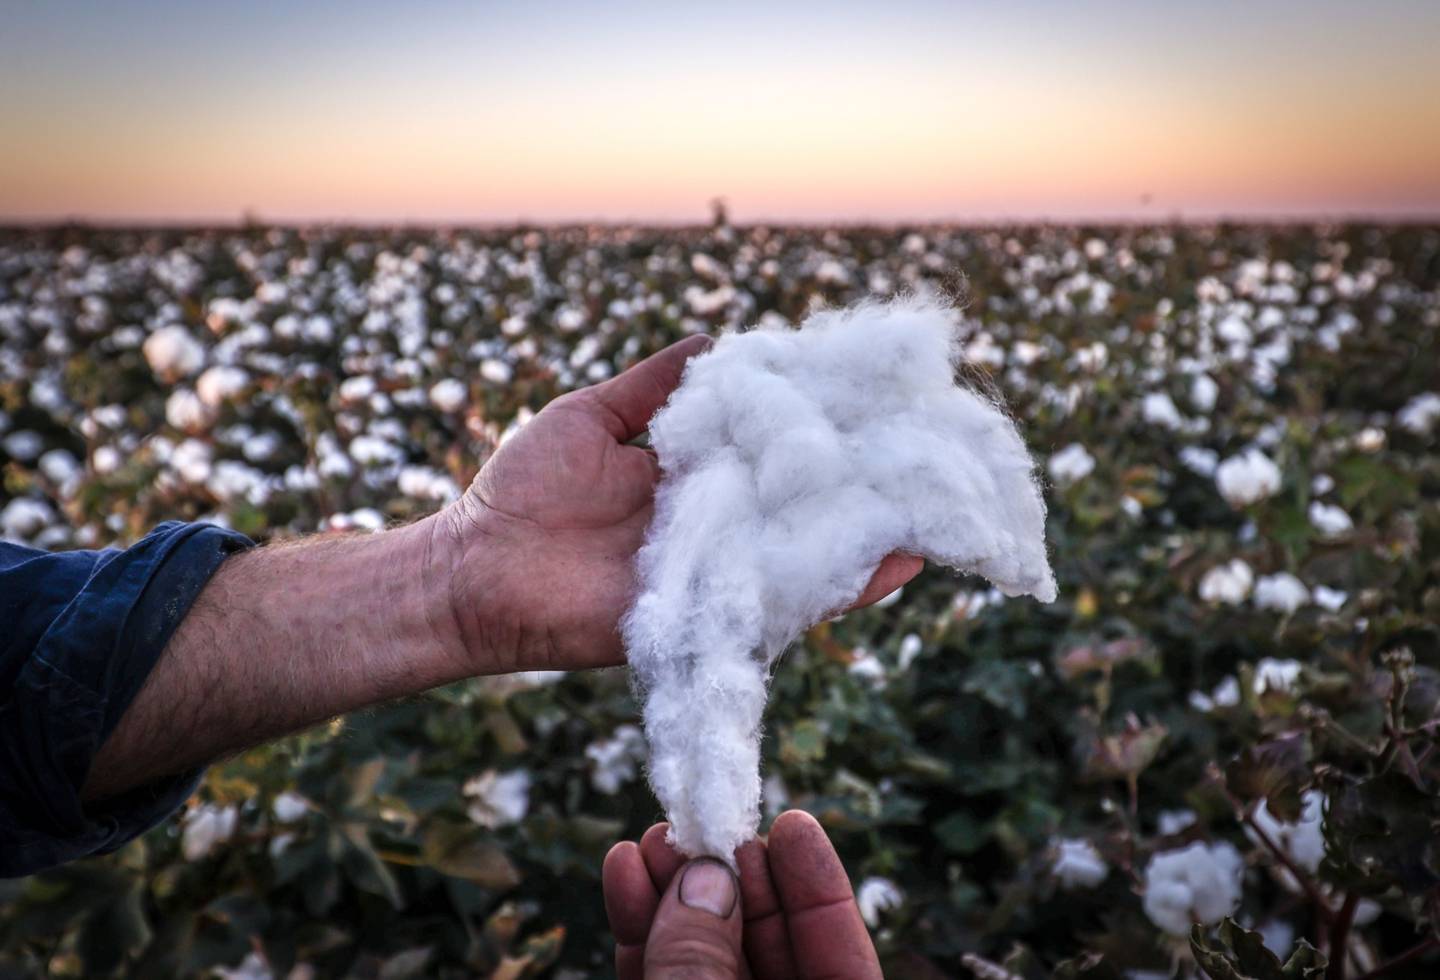 A farmer inspects a cotton crop.